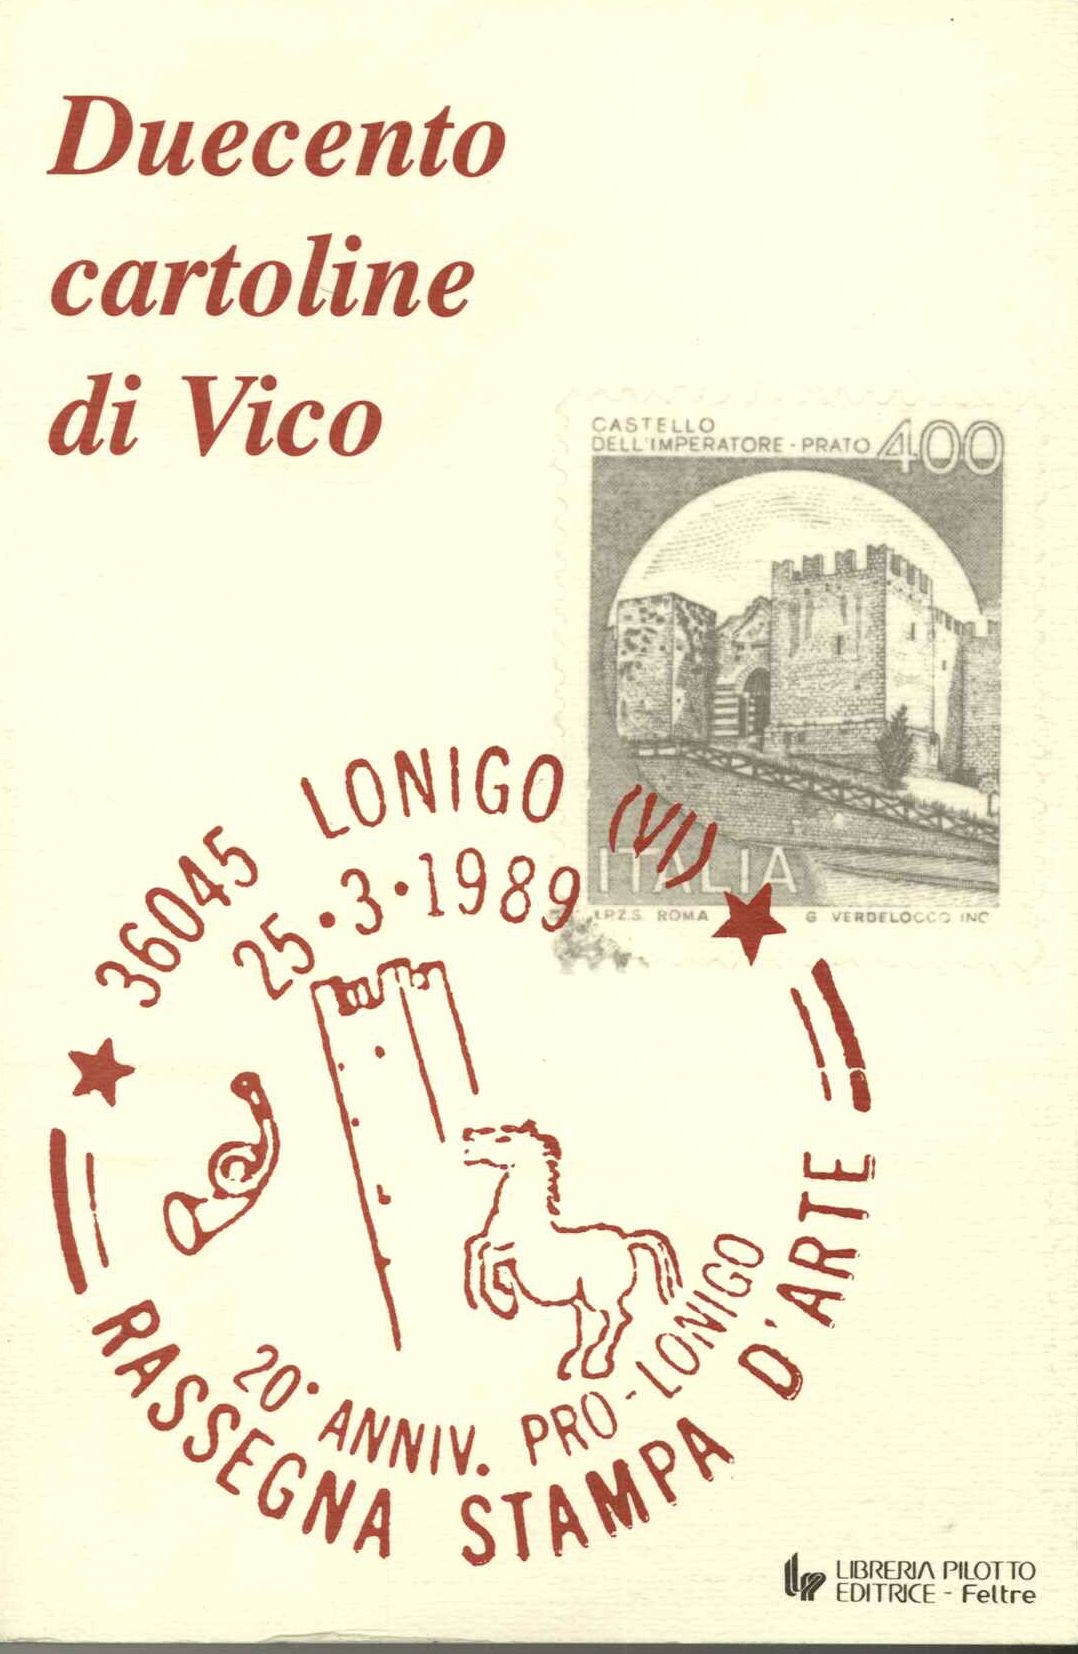 Duecento cartoline di Vico (Calabrò)